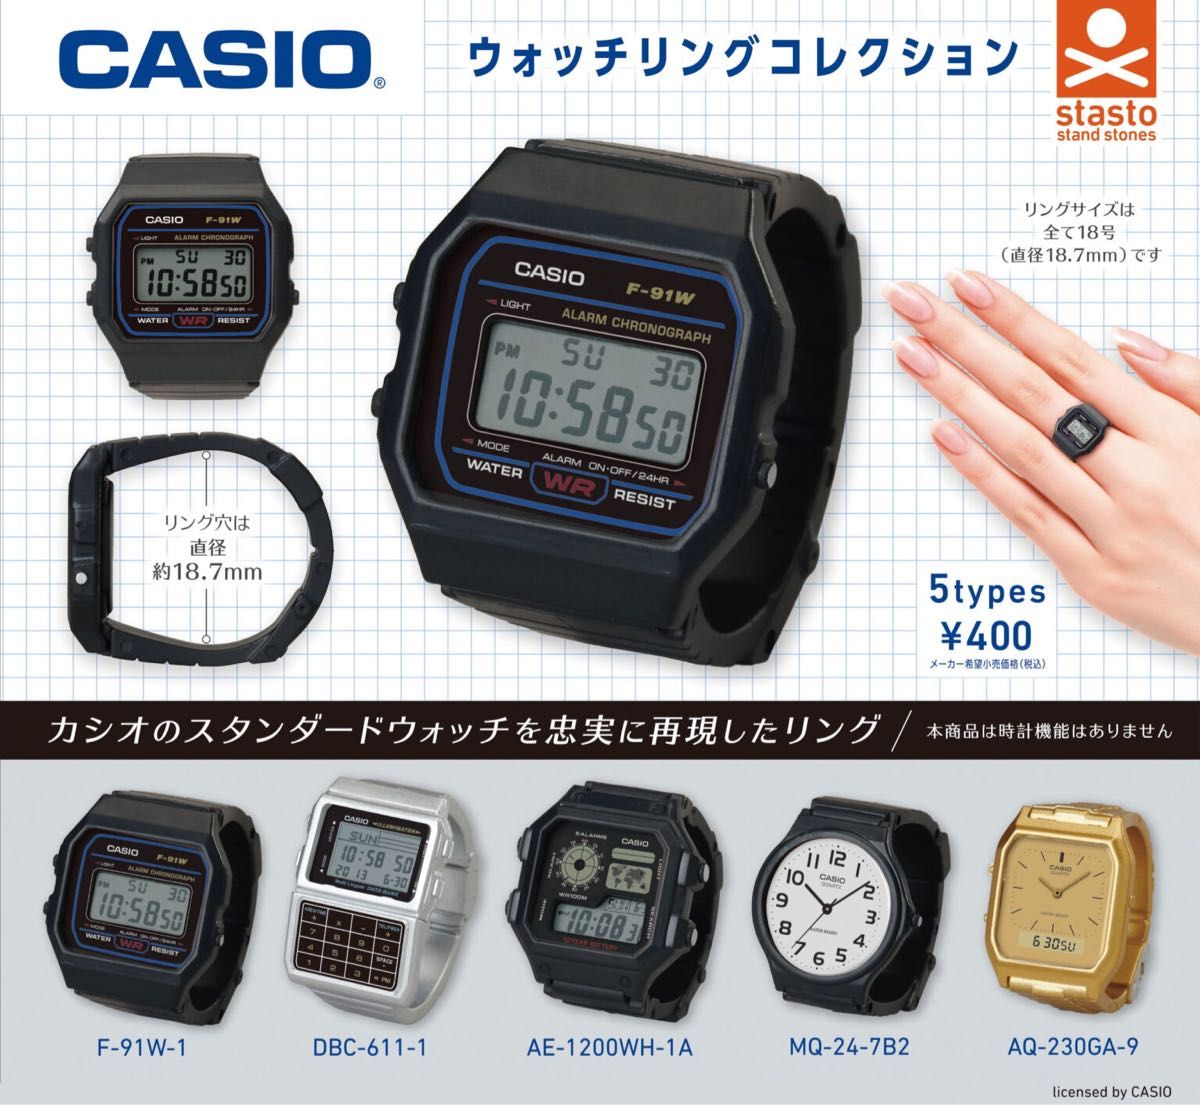 【新品】カシオウォッチリングコレクション 全5種類 コンプリートセット 劇レア CASIO G-SHOCK カシオ 腕時計